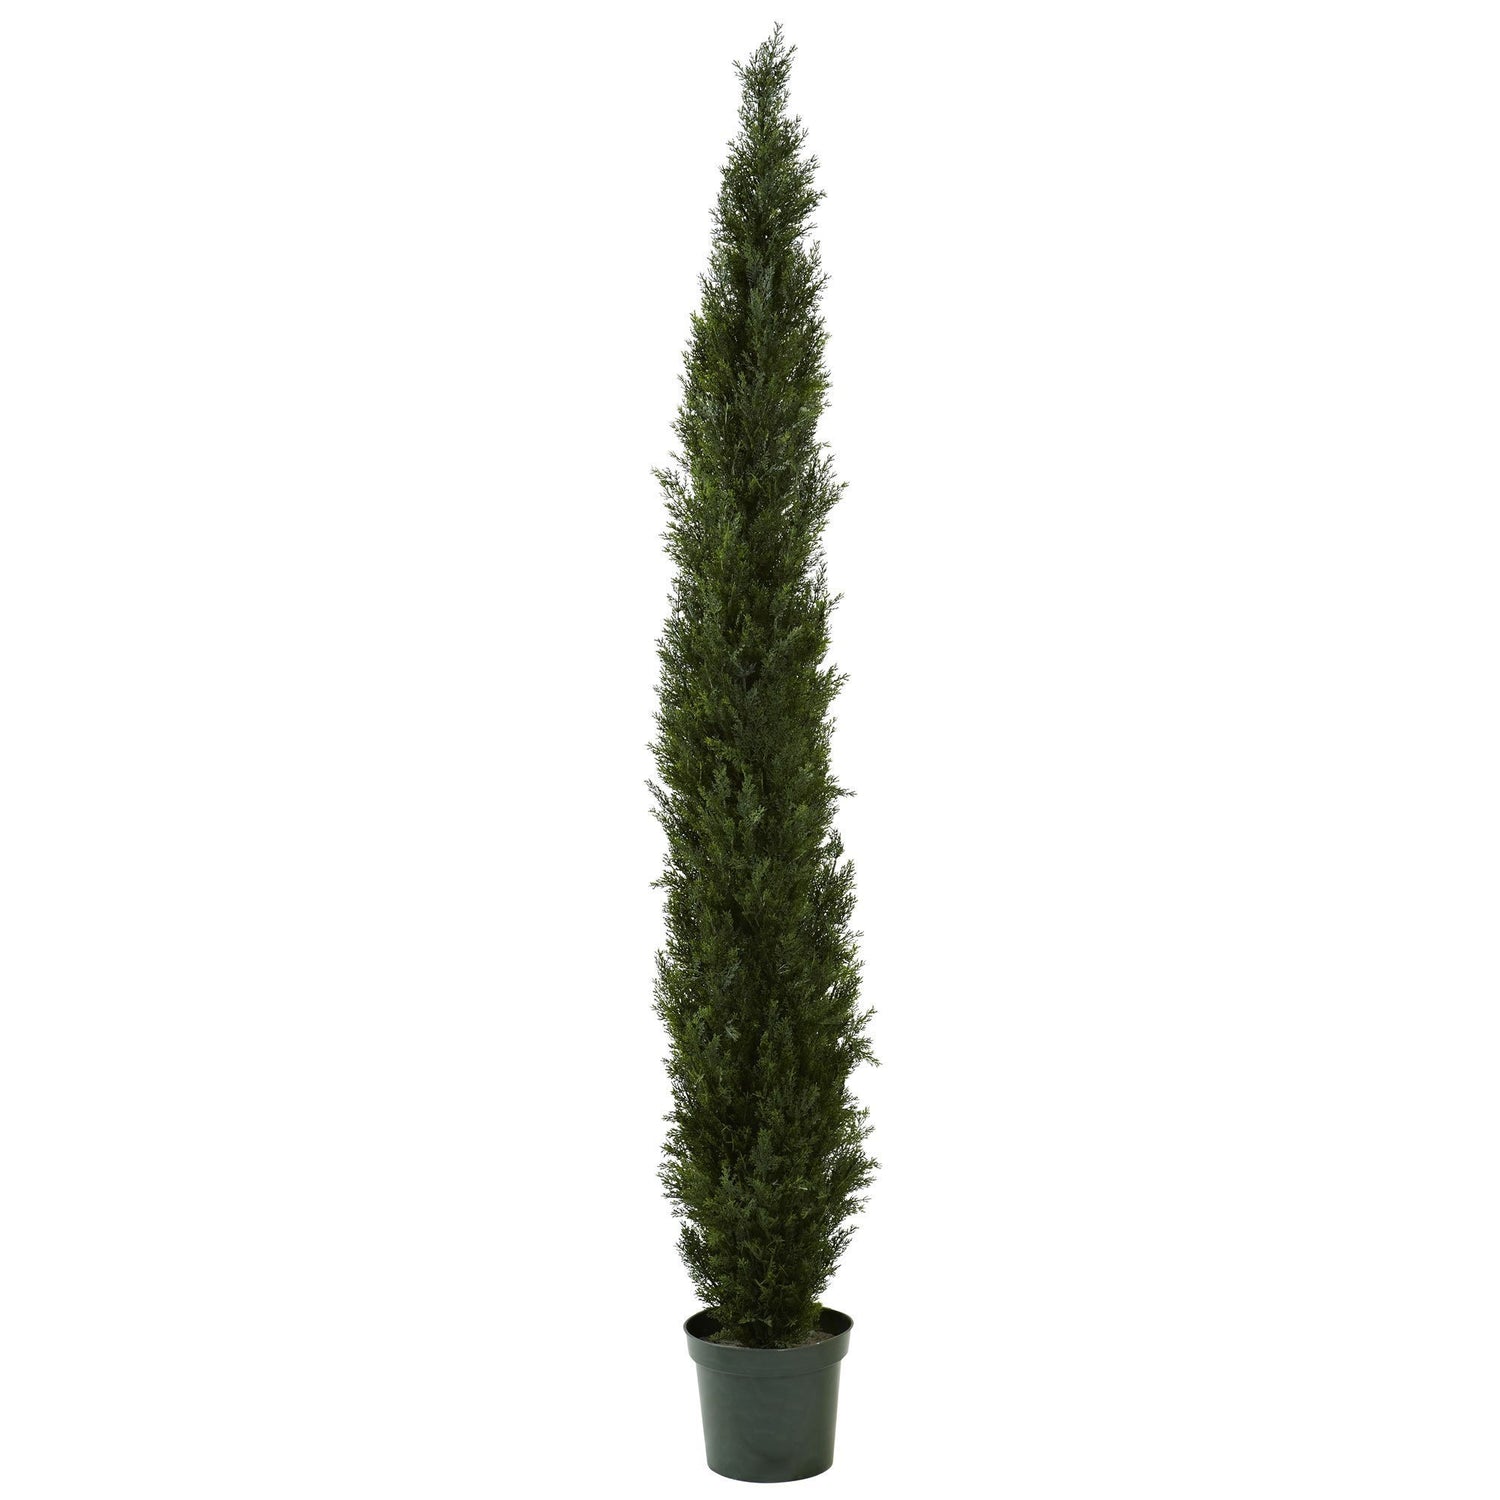 8' Mini Cedar Pine Tree w/4249 tips in 12” Pot (Two Tone Green)